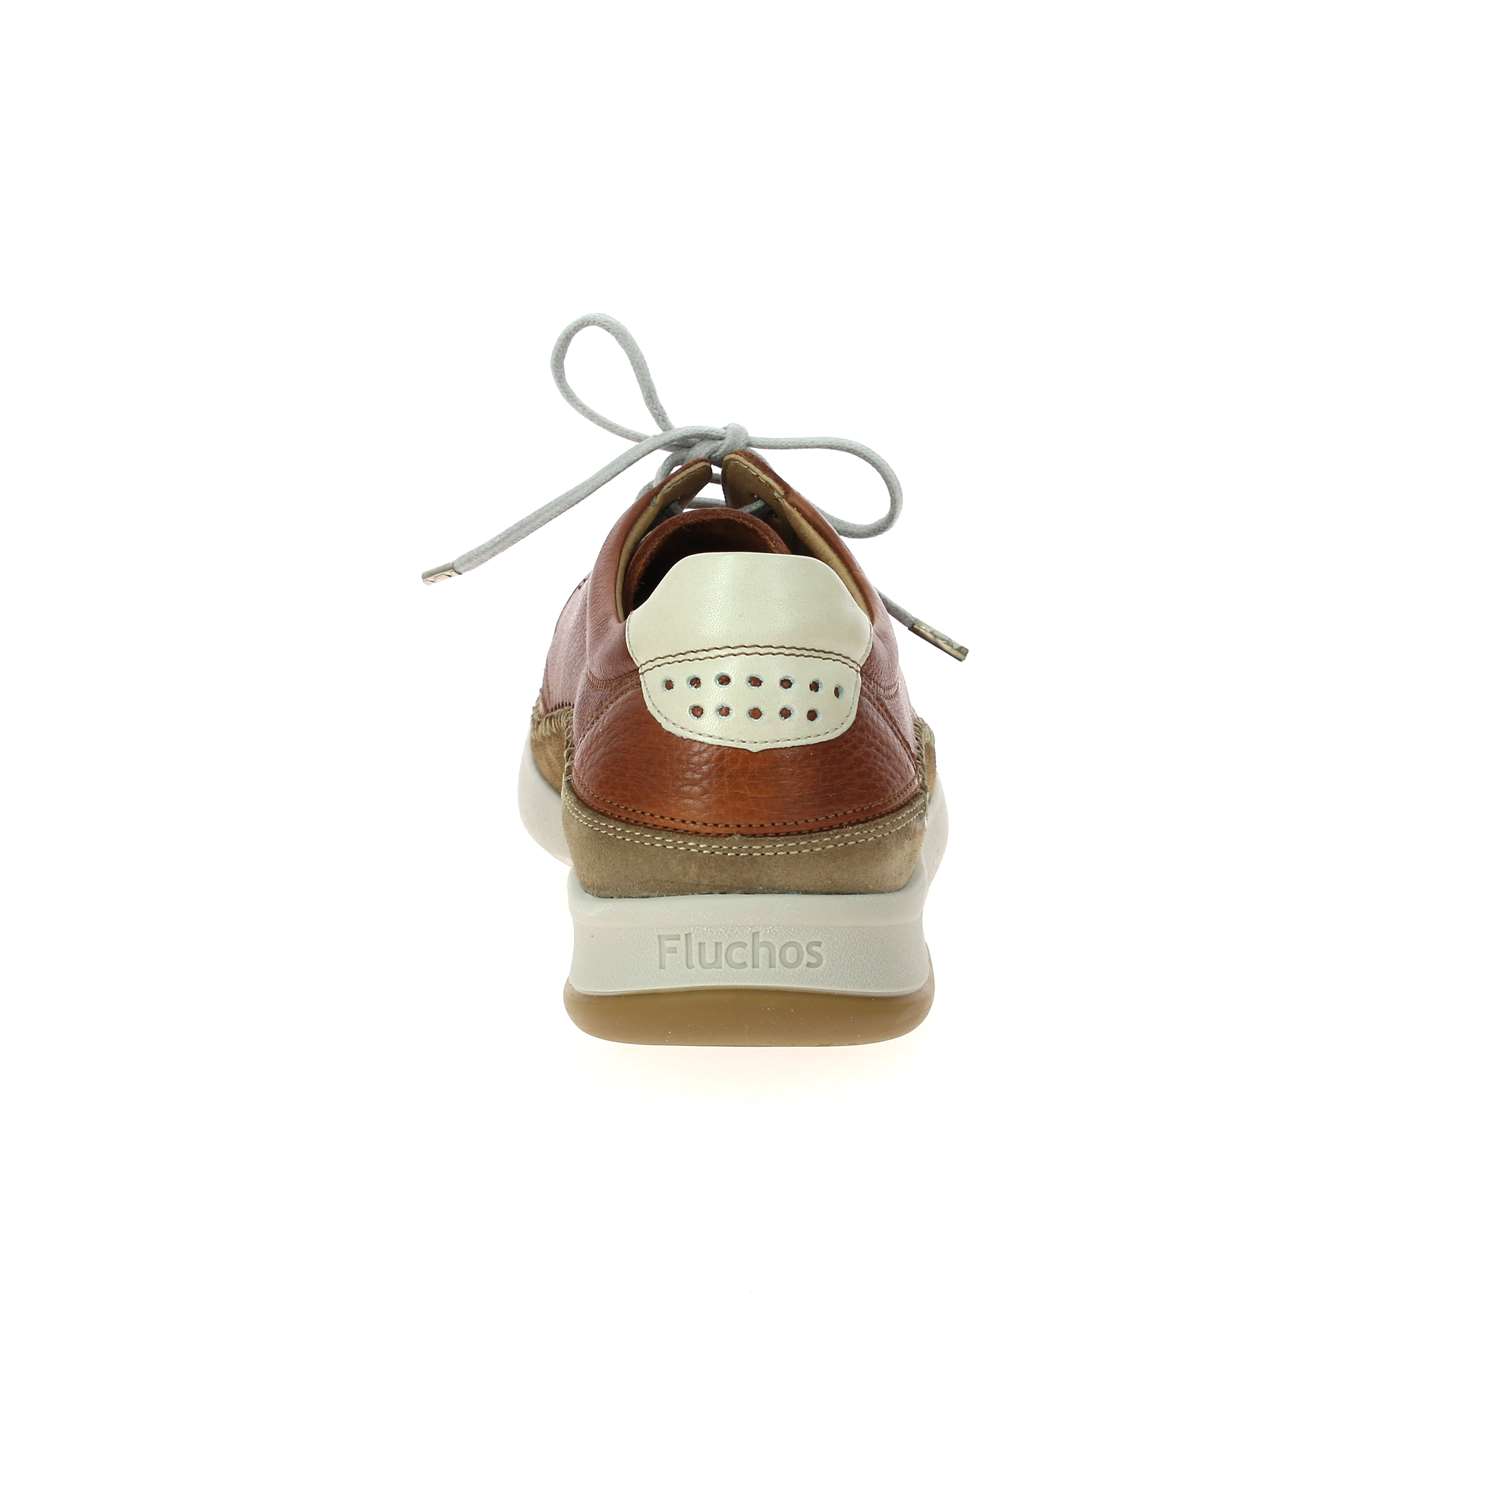 04 - FLUTAN - FLUCHOS - Chaussures à lacets - Cuir